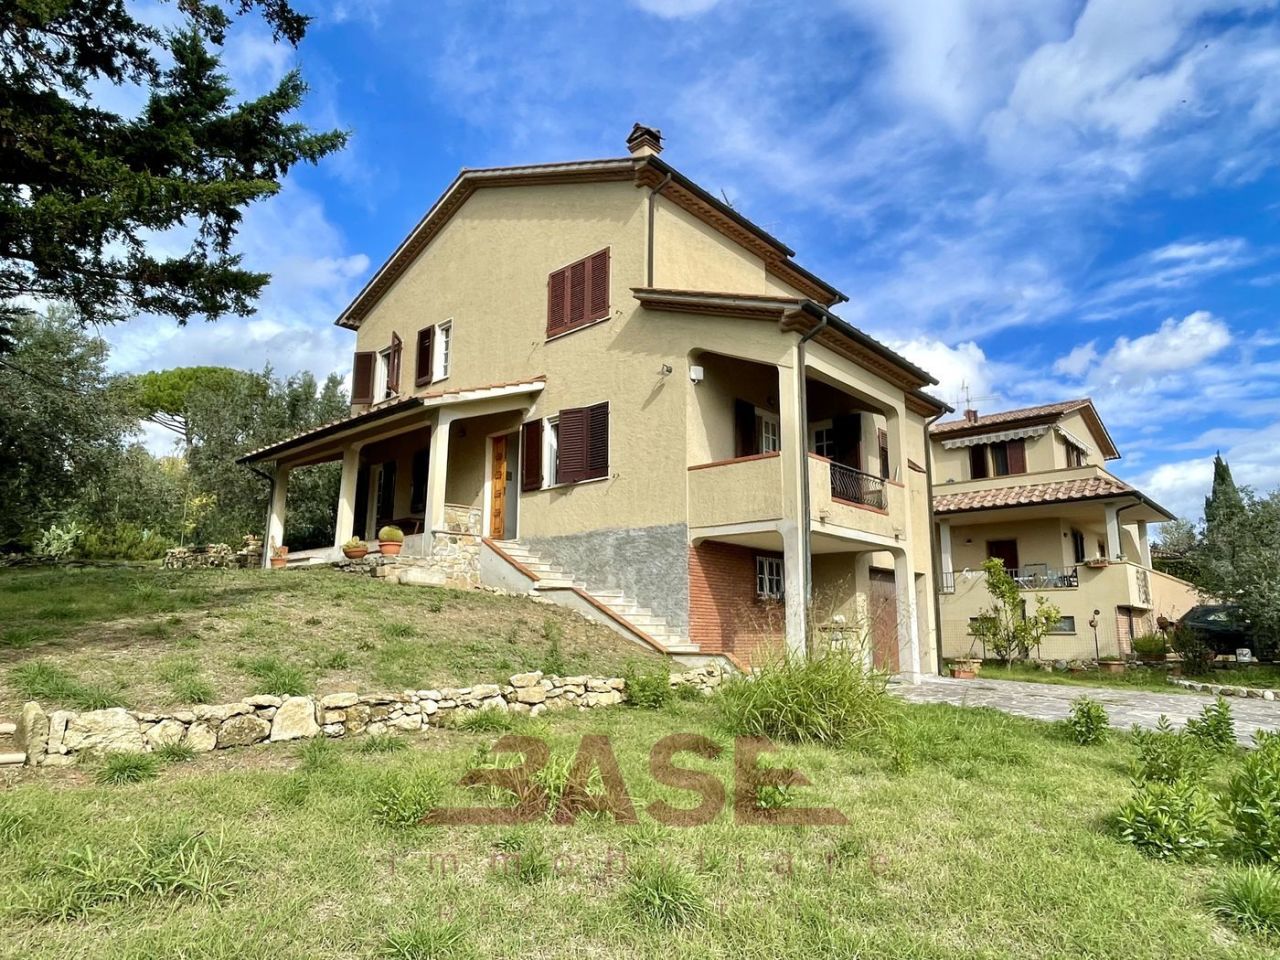 Villa in vendita a Casale Marittimo, 12 locali, prezzo € 450.000 | PortaleAgenzieImmobiliari.it